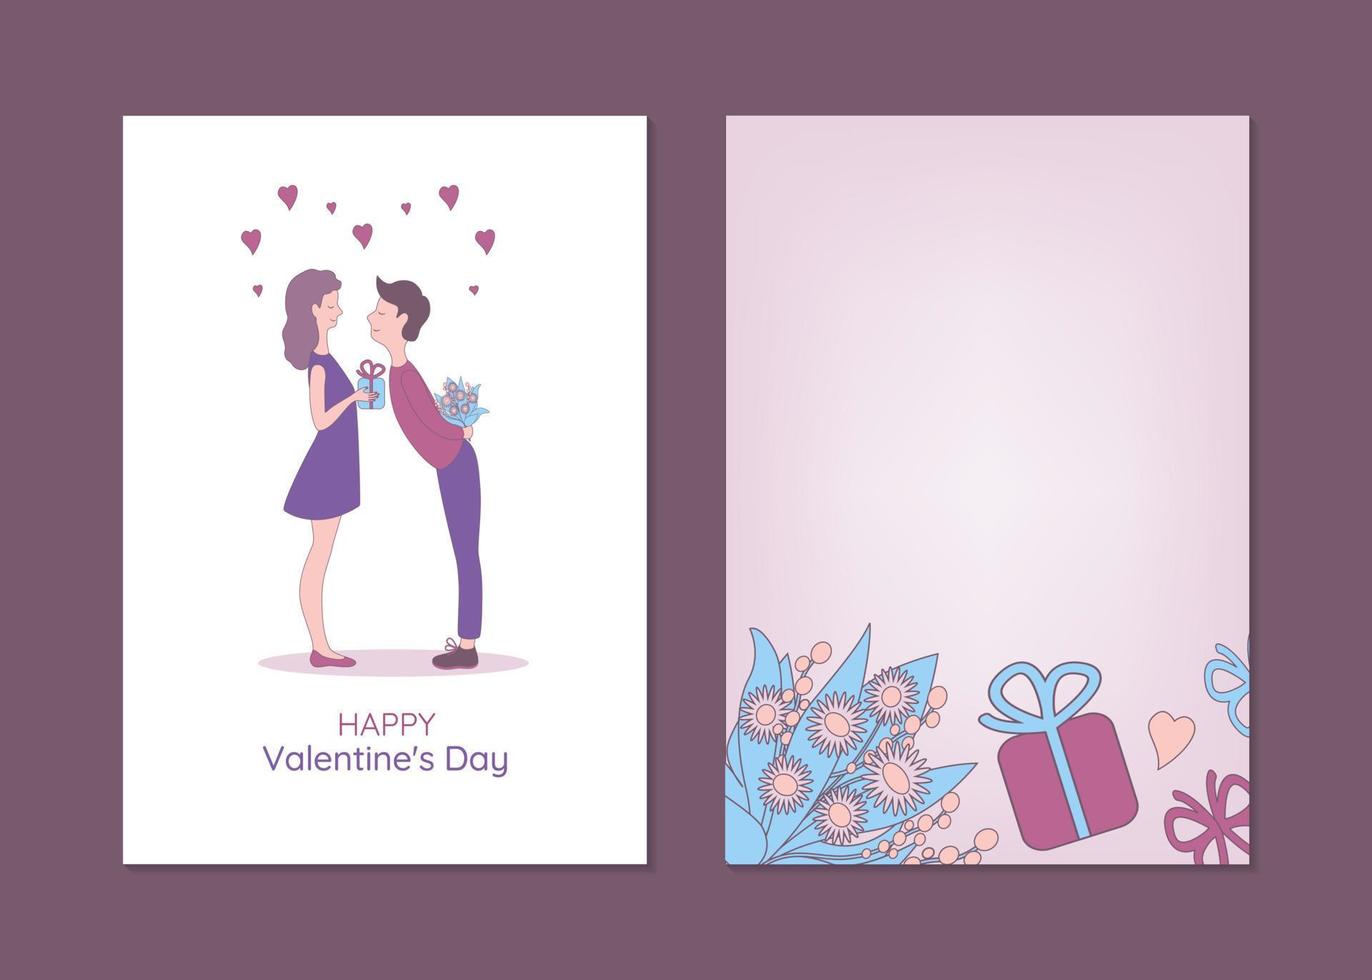 Valentinstag-Grußkartenvorlagen mit Mann und Frau. hand gezeichnete vektorillustration eines paares, das geschenke austauscht. vektor